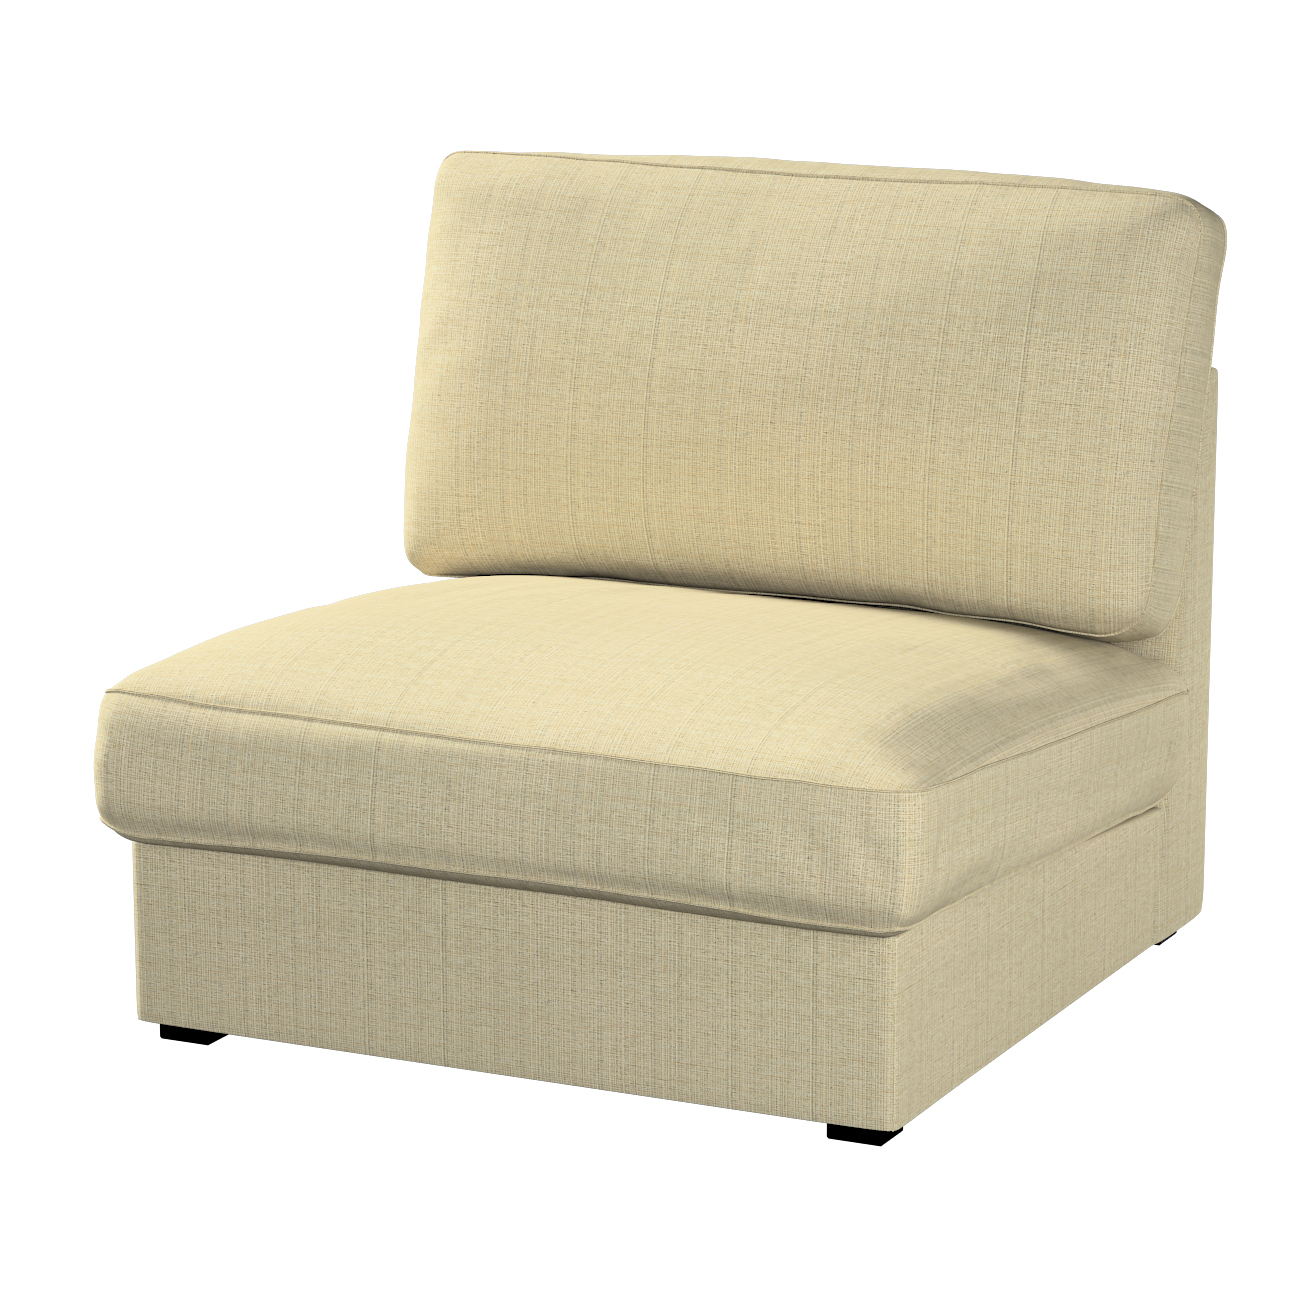 Bezug für Kivik Sessel nicht ausklappbar, beige-creme, Bezug für Sessel Kiv günstig online kaufen